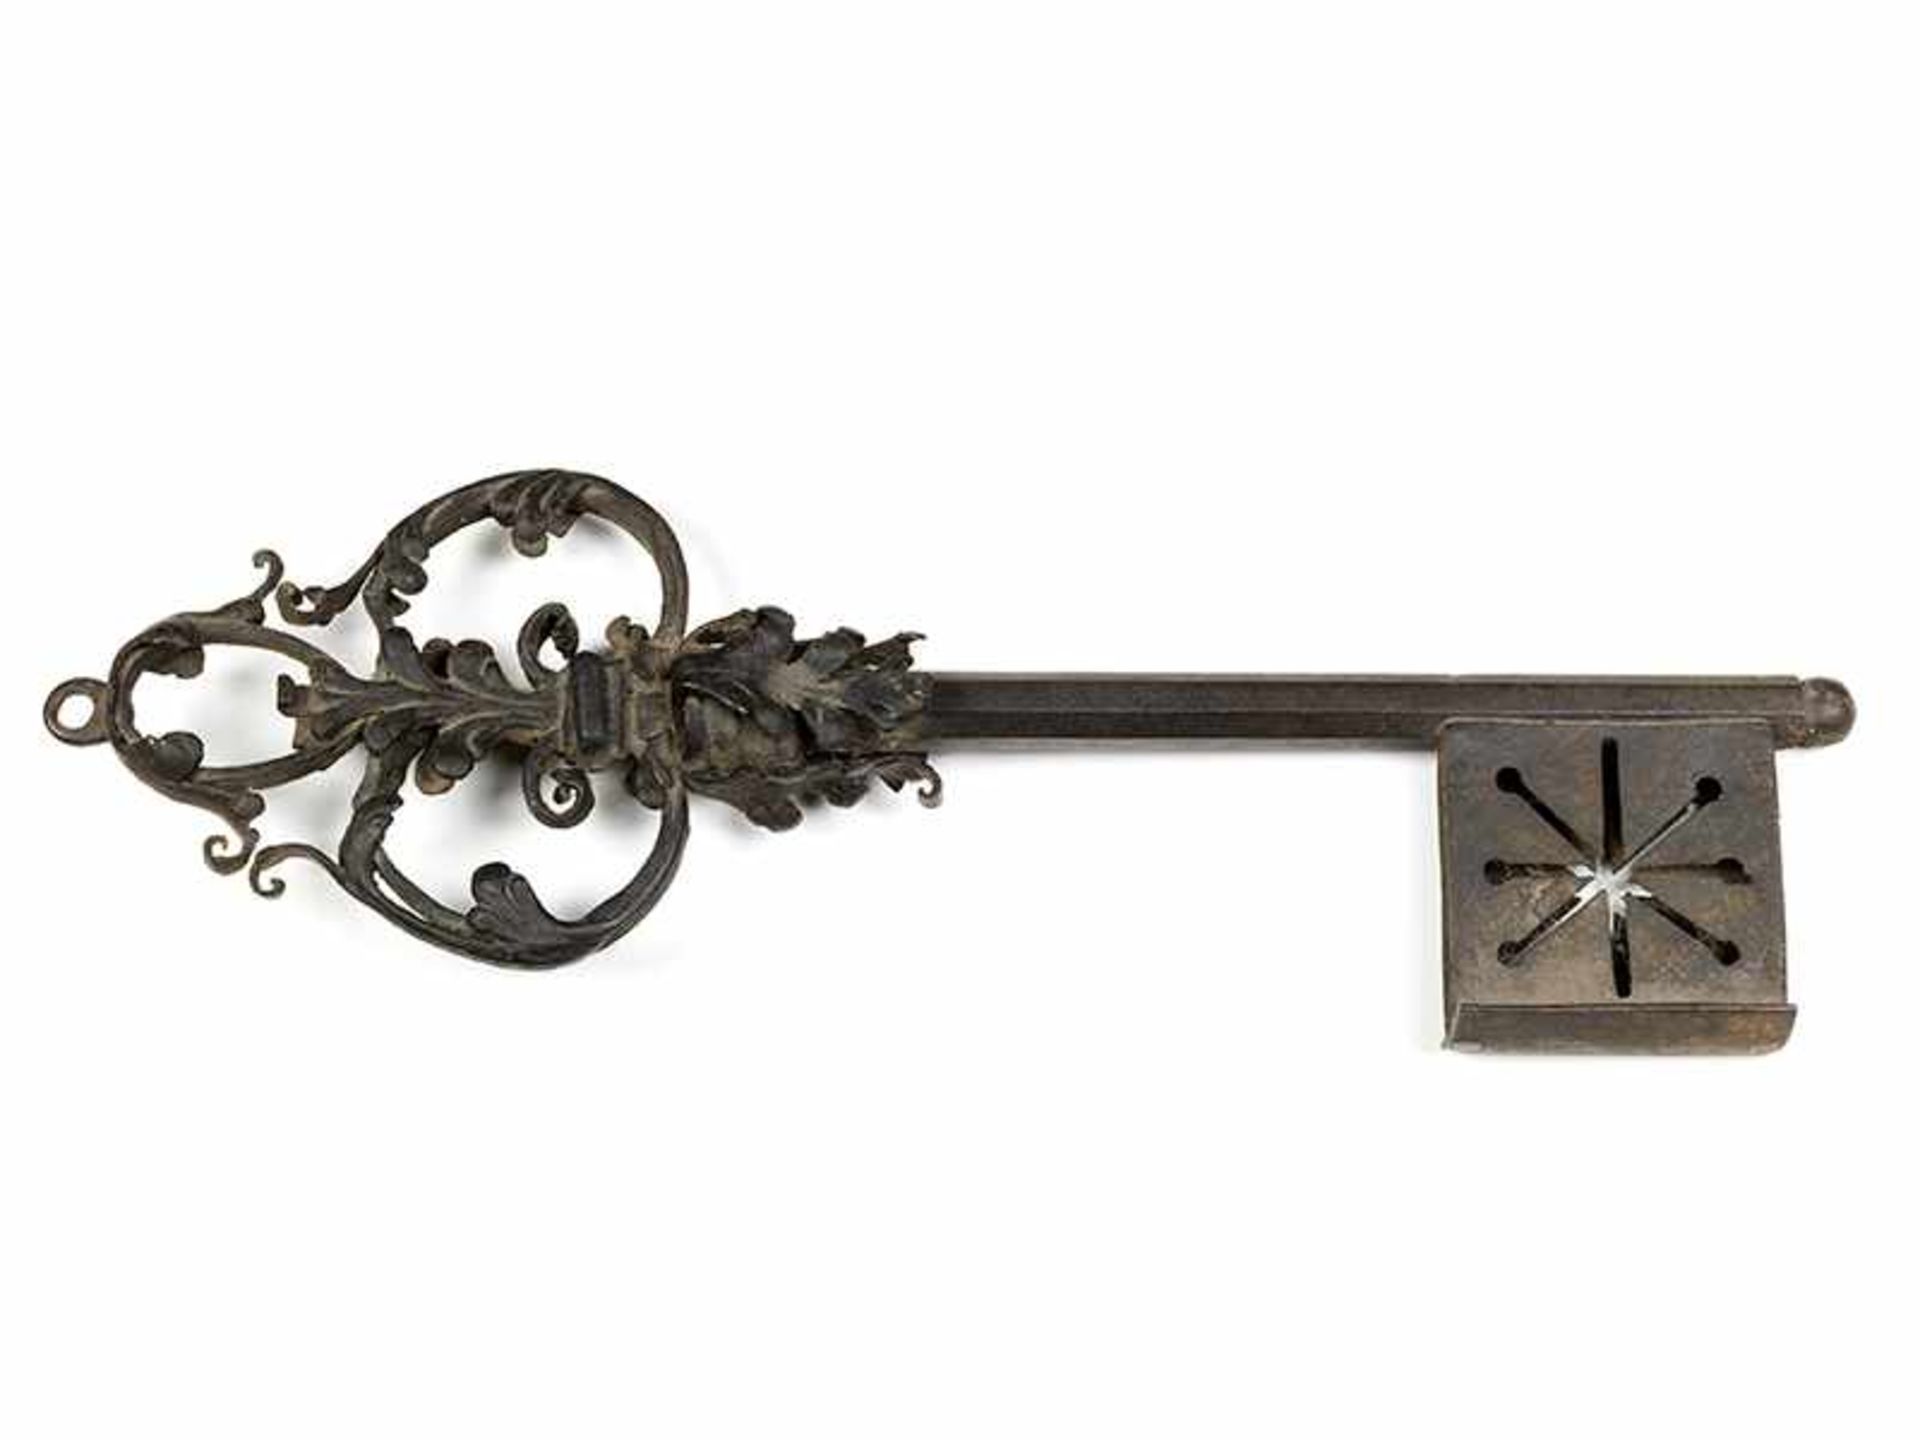 Großer in Eisen geschmiedeter Schlüssel Länge: 55 cm. Anfang, 18. Jahrhundert. Wohl Anhänger eines